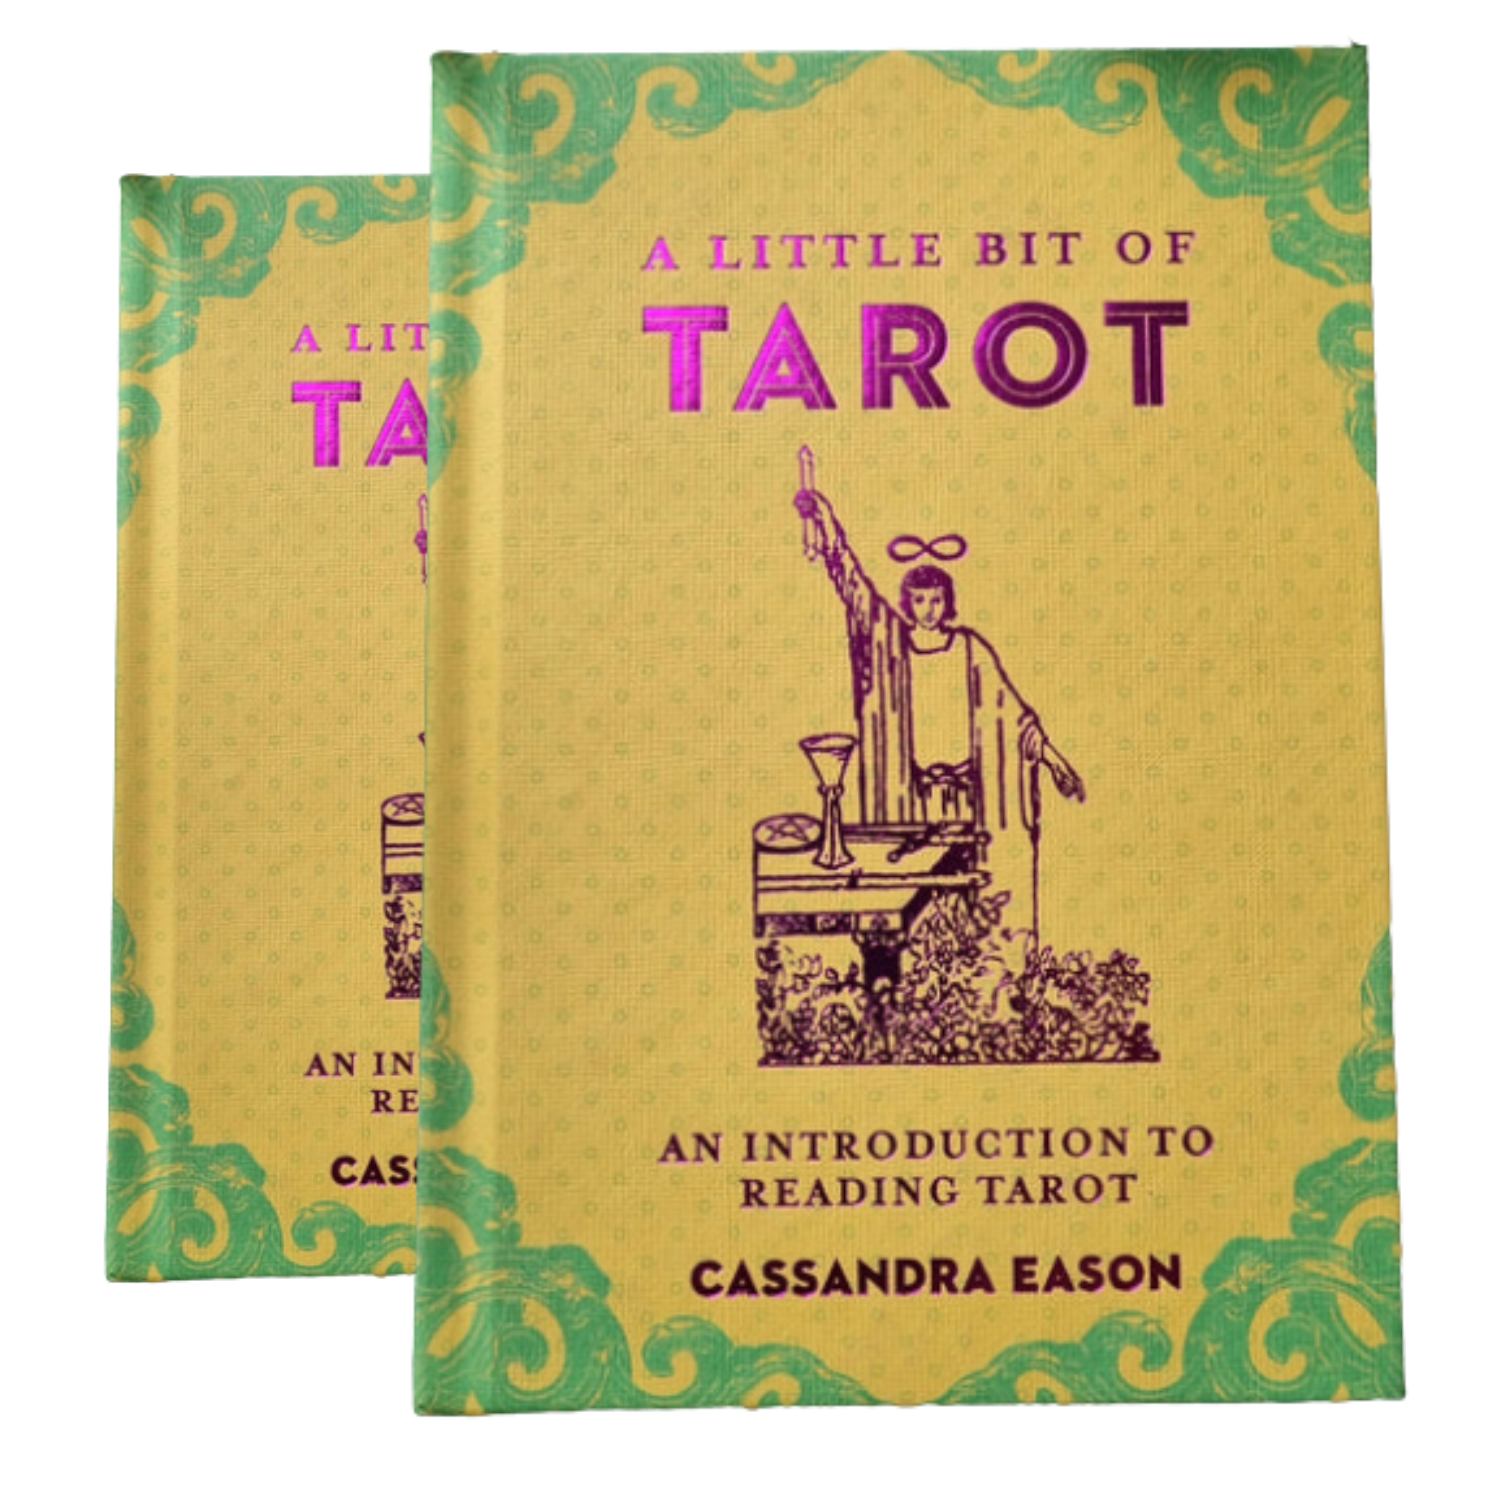 A little bit of Tarot - Cassandra Eason